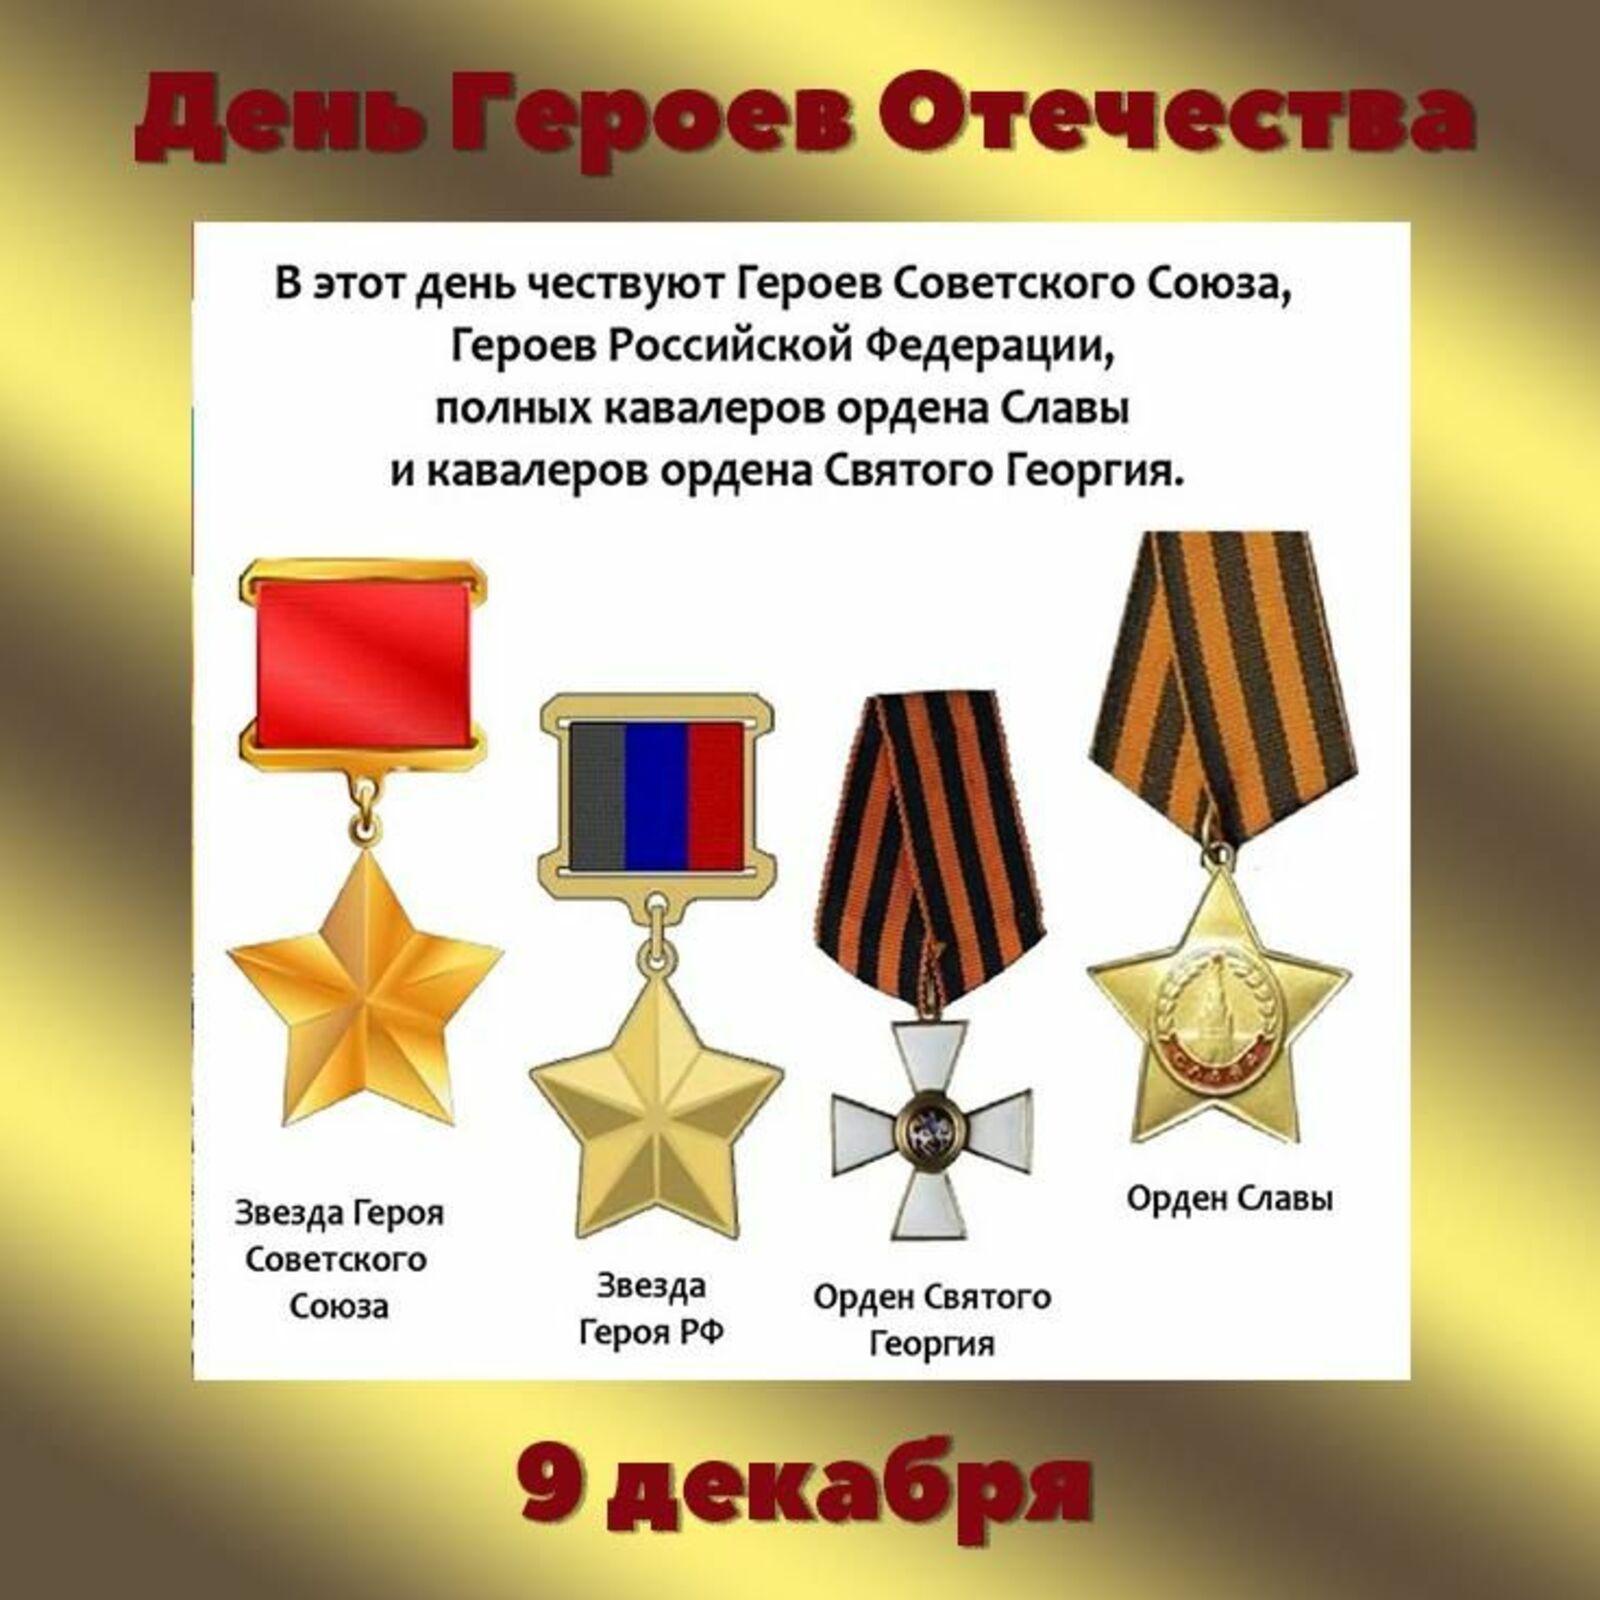 В России 9 декабря отмечают День героев Отечества..